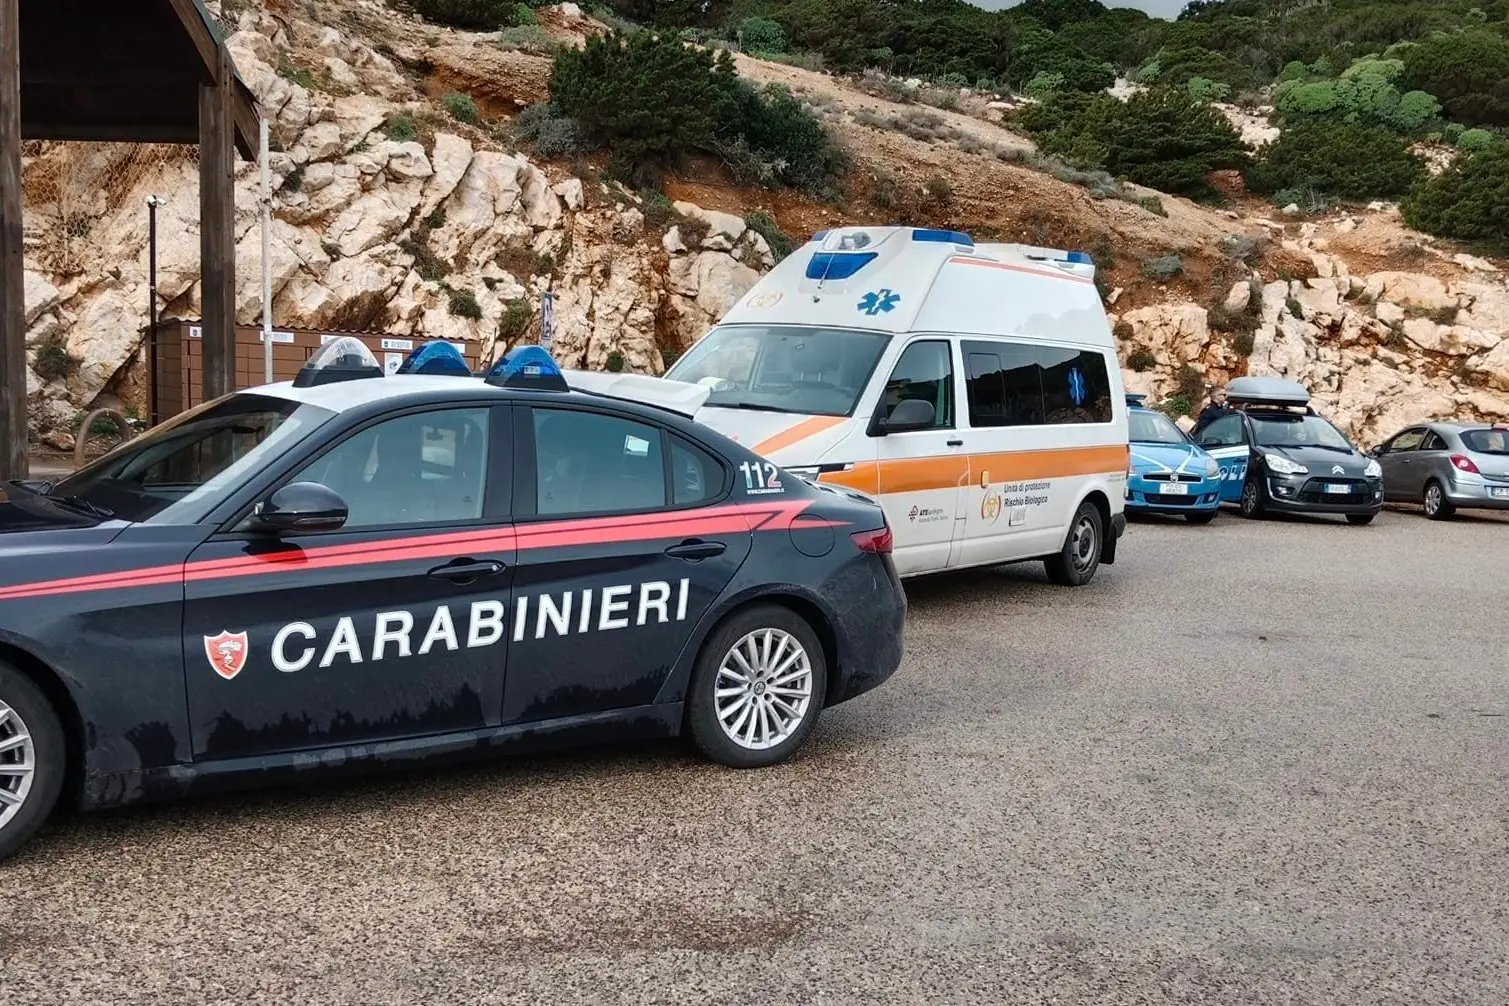 Carabinieri, polizia e ambulanza sul luogo del ritrovamento del corpo (Foto concessa)